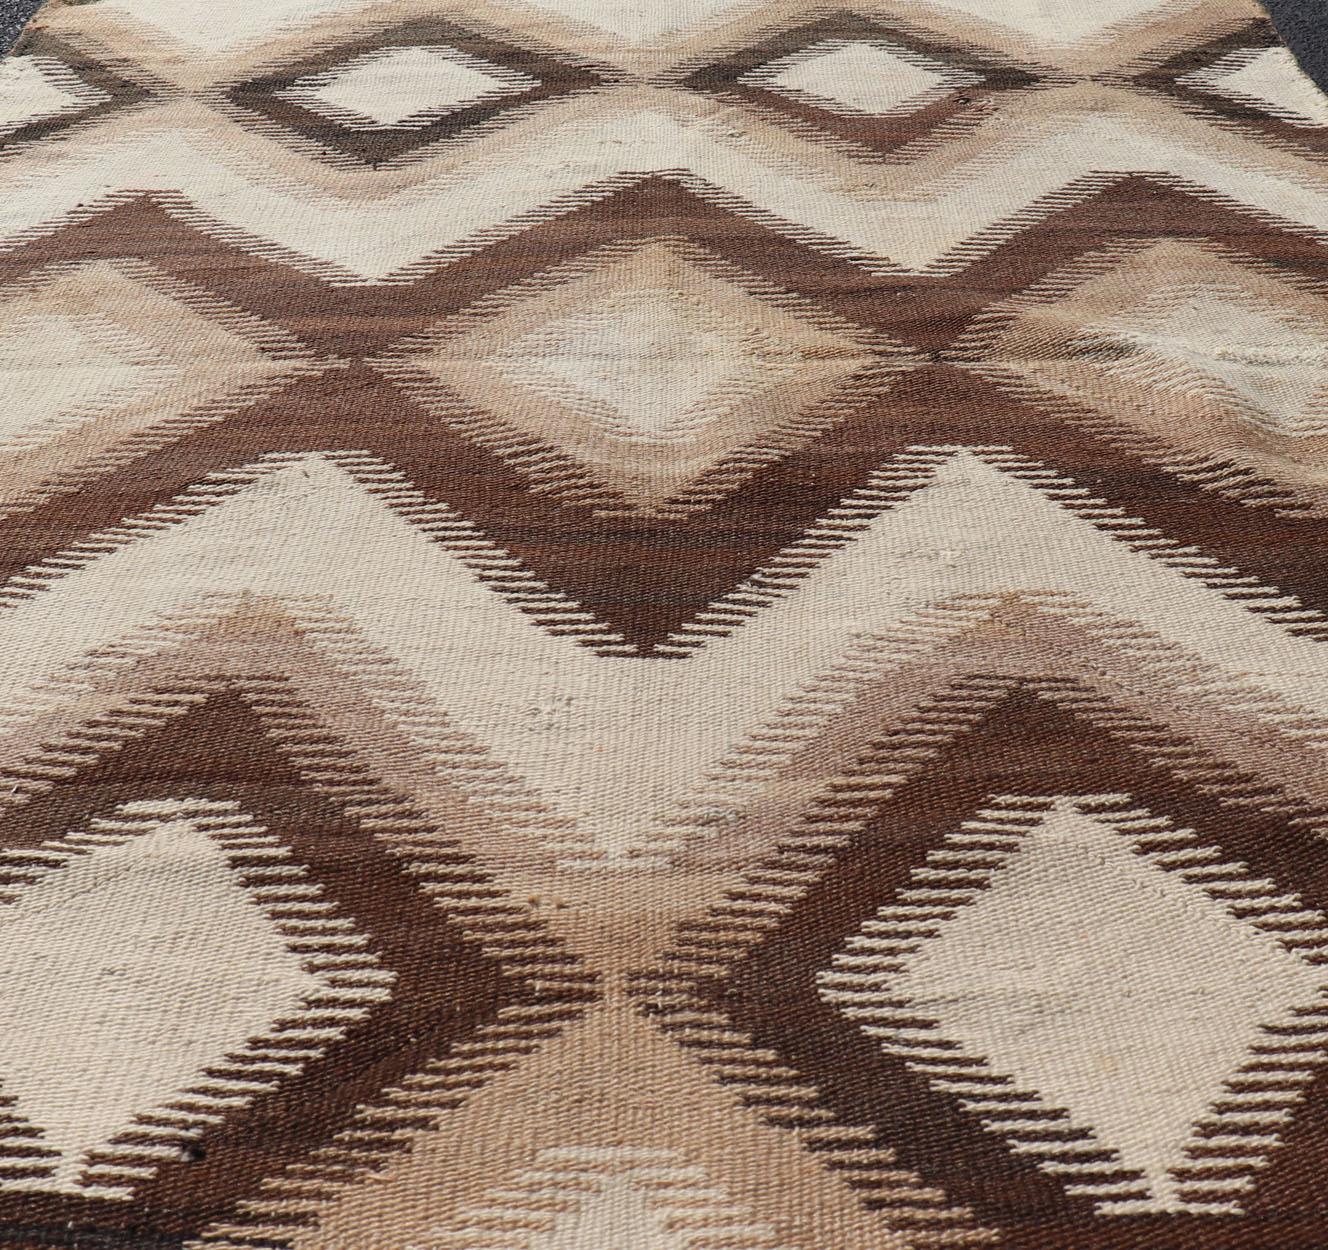 Mesures : 3'9 x 5'7 
Tapis Navajo américain à motifs géométriques en forme de diamants dans les coloris Tan, Brown et Cream. Keivan Woven Arts / tapis W22-0901, pays d'origine / type : États-Unis d'Amérique / Navajo, circa early-20th Century.

Cet